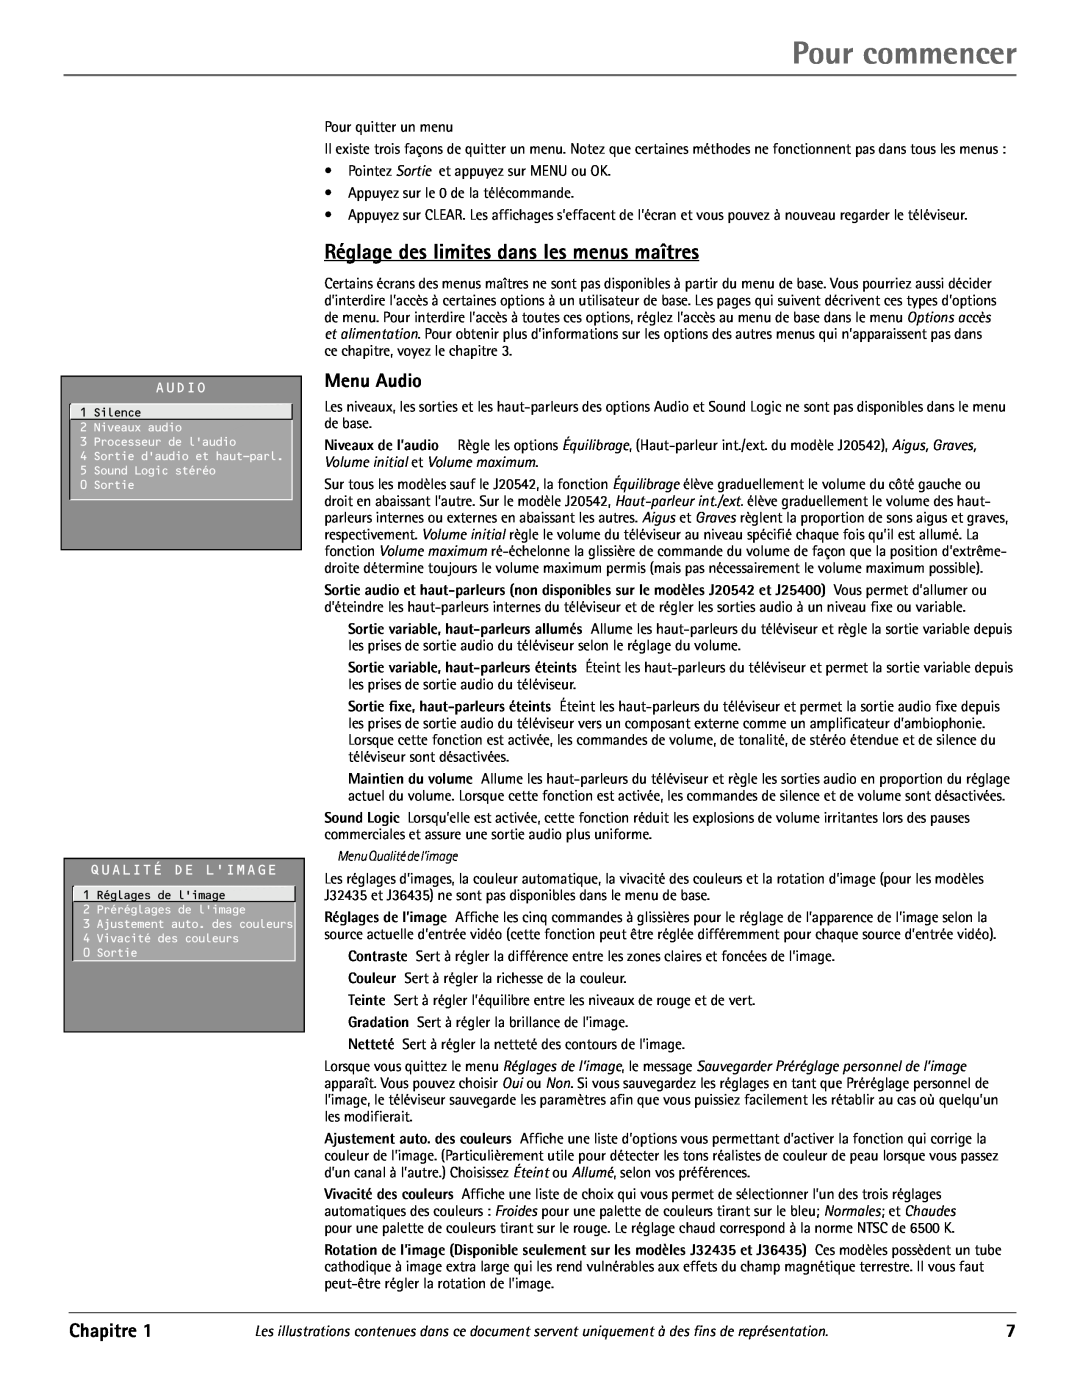 RCA J20542 manual Réglage des limites dans les menus maîtres, Menu Audio, Pour commencer, Chapitre, Qualité De Limage 